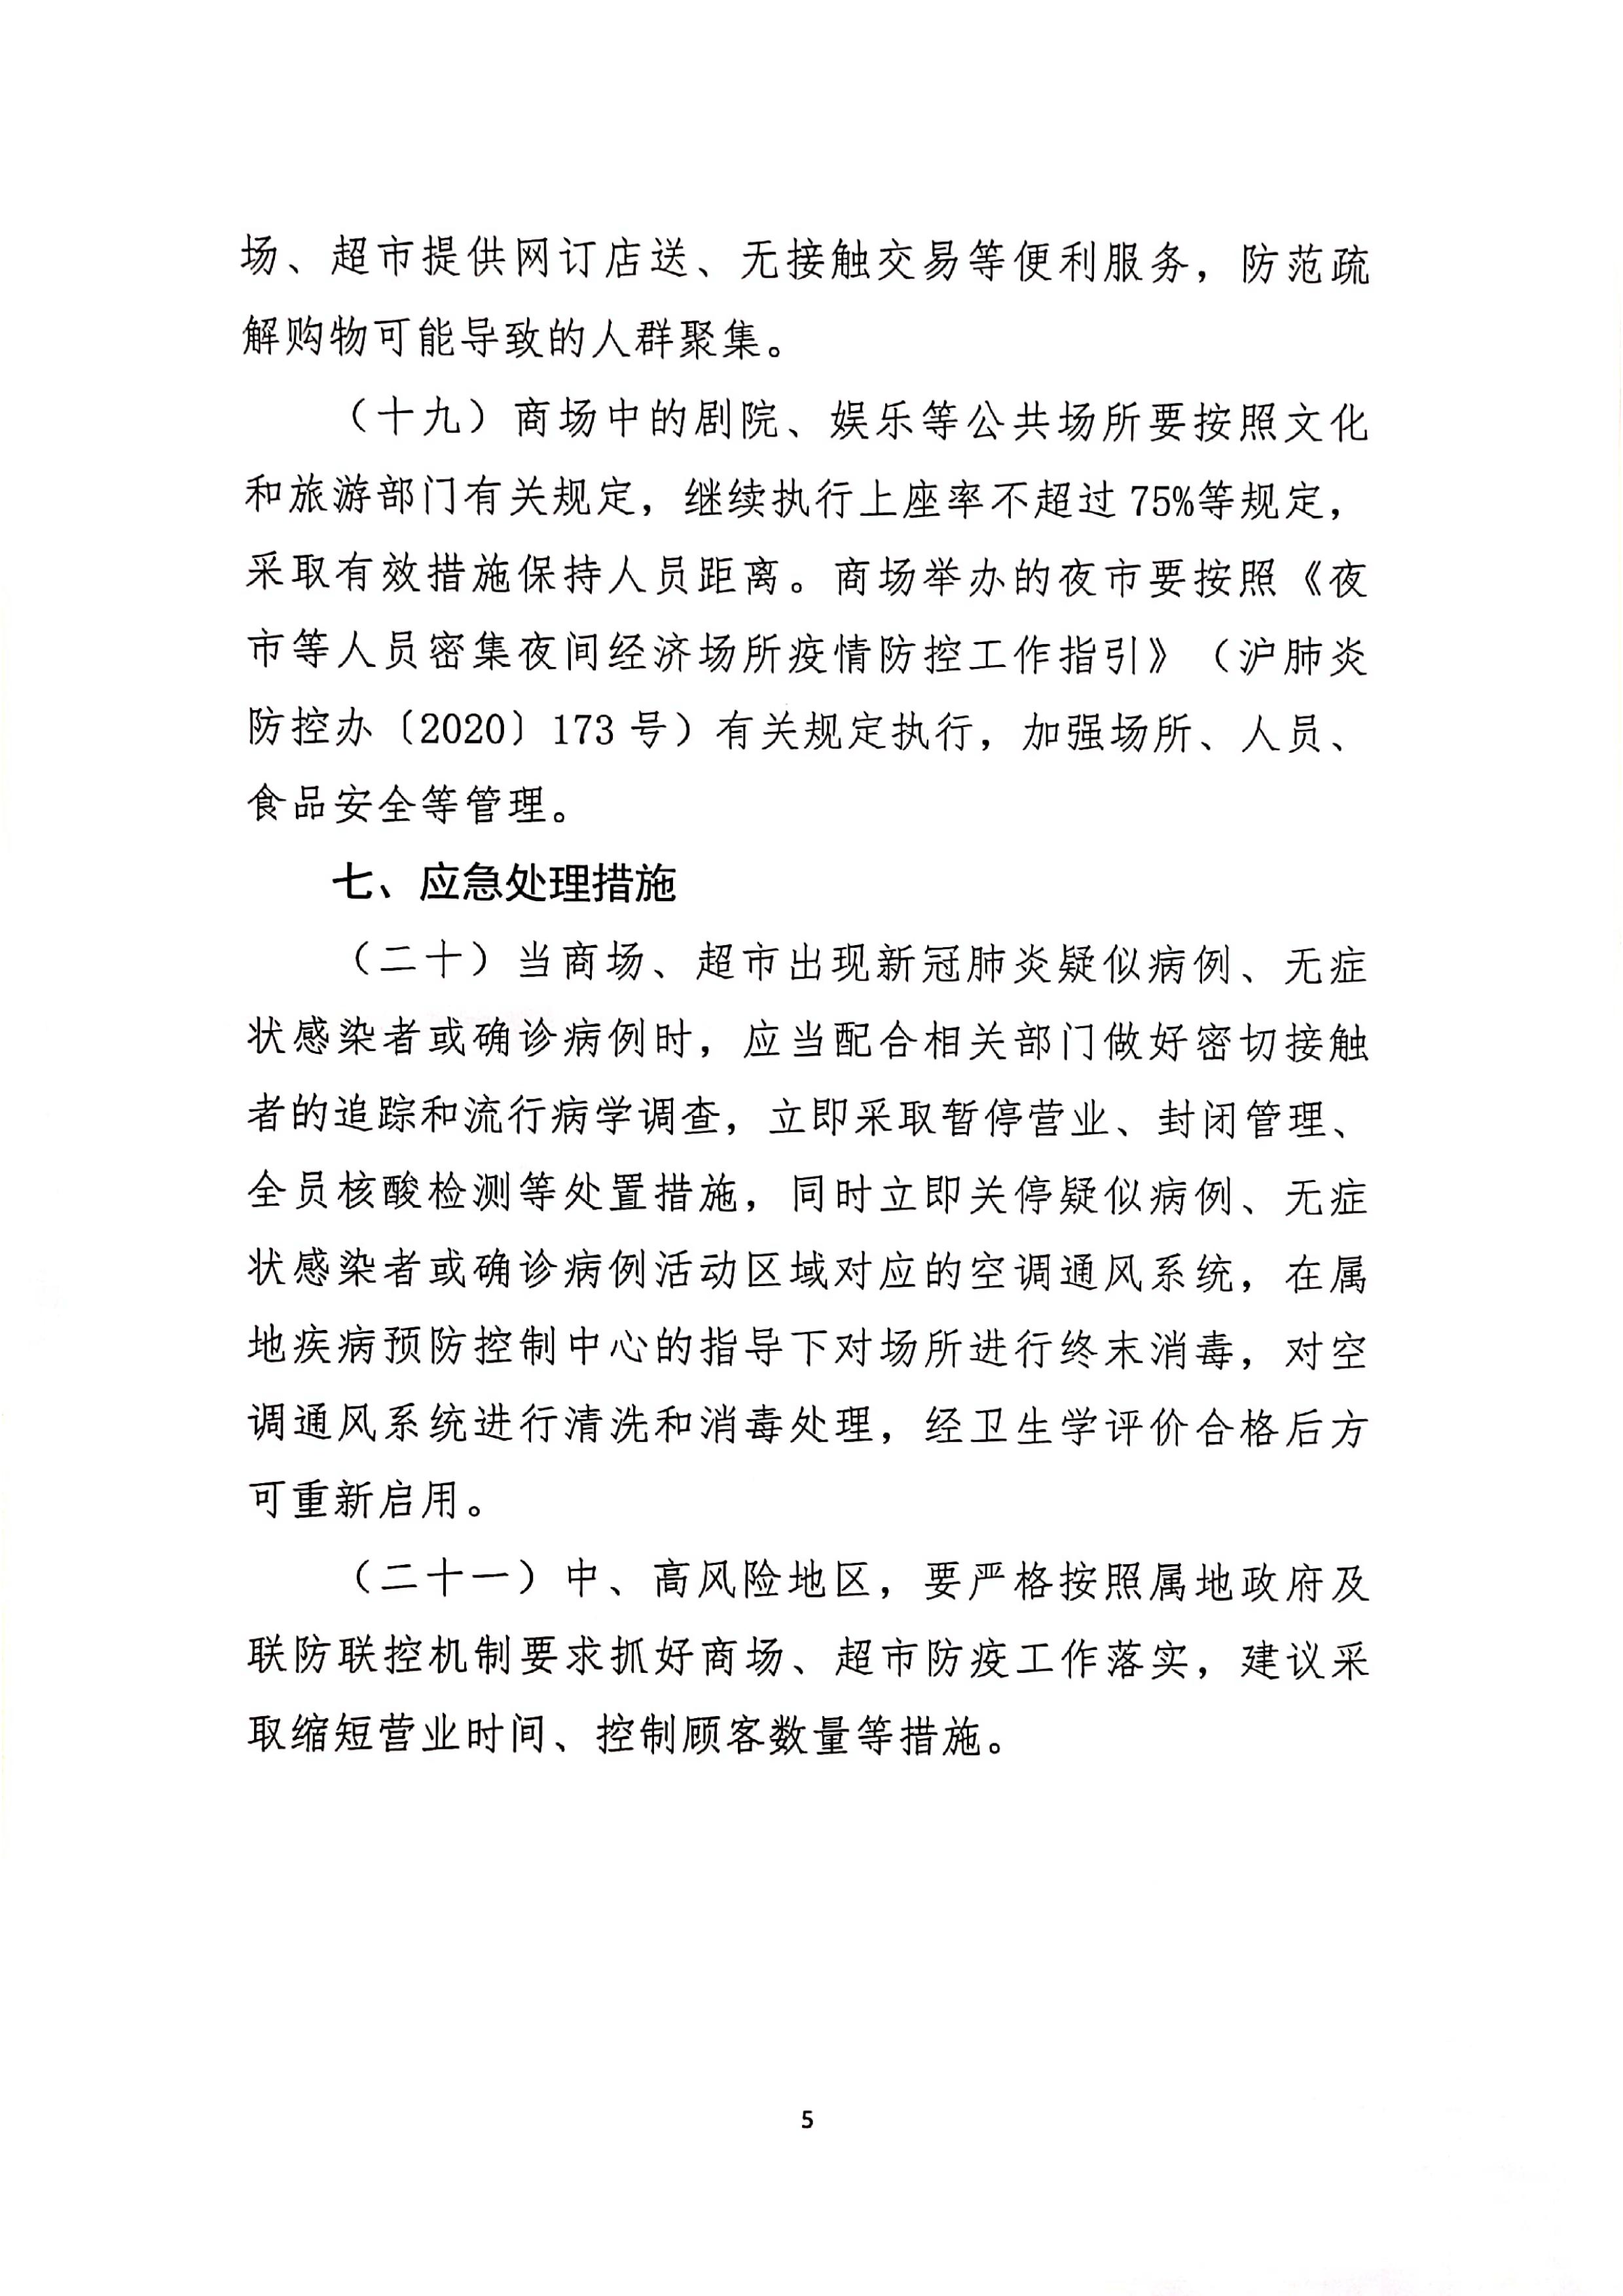 发文4号-关于印发《上海市商场、超市疫情防控技术指南》等4个指南的通知_05.jpg